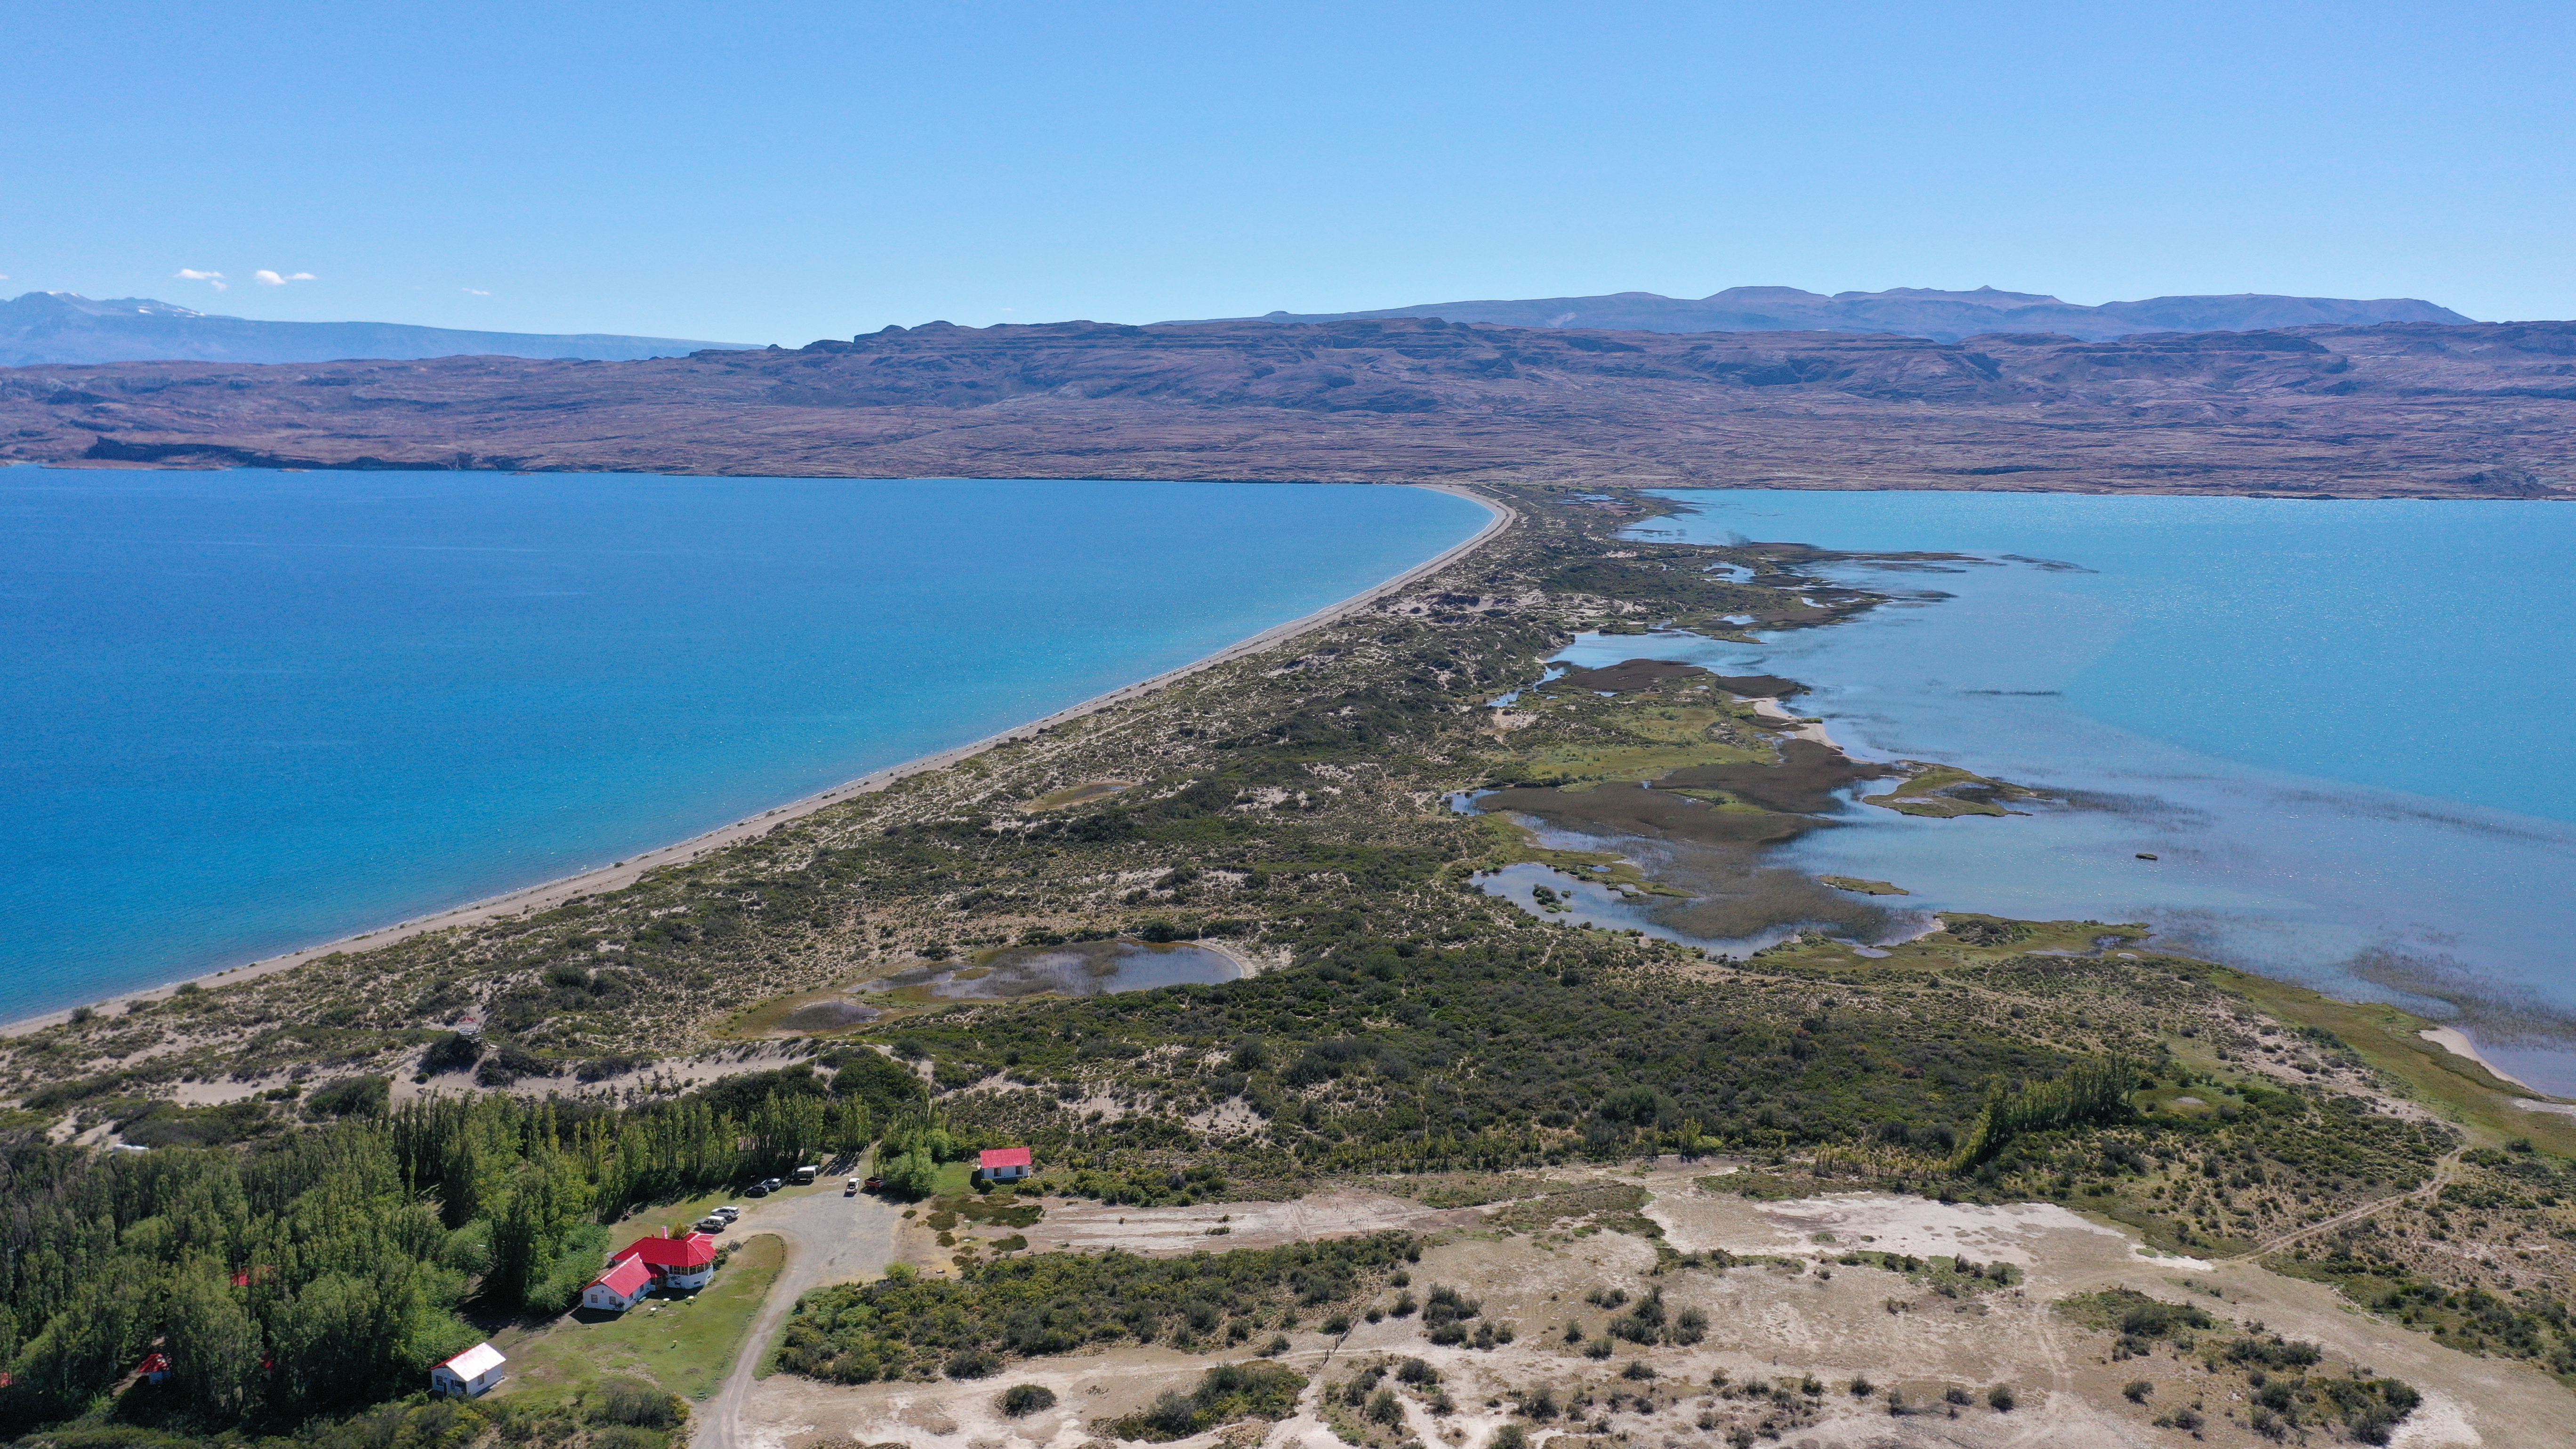 Una cortada llega hasta el asombroso itsmo de los lagos Posadas y Pueyrredón, una franja de tierra de 4 kilómetros de largo y apenas 100 metros de ancho